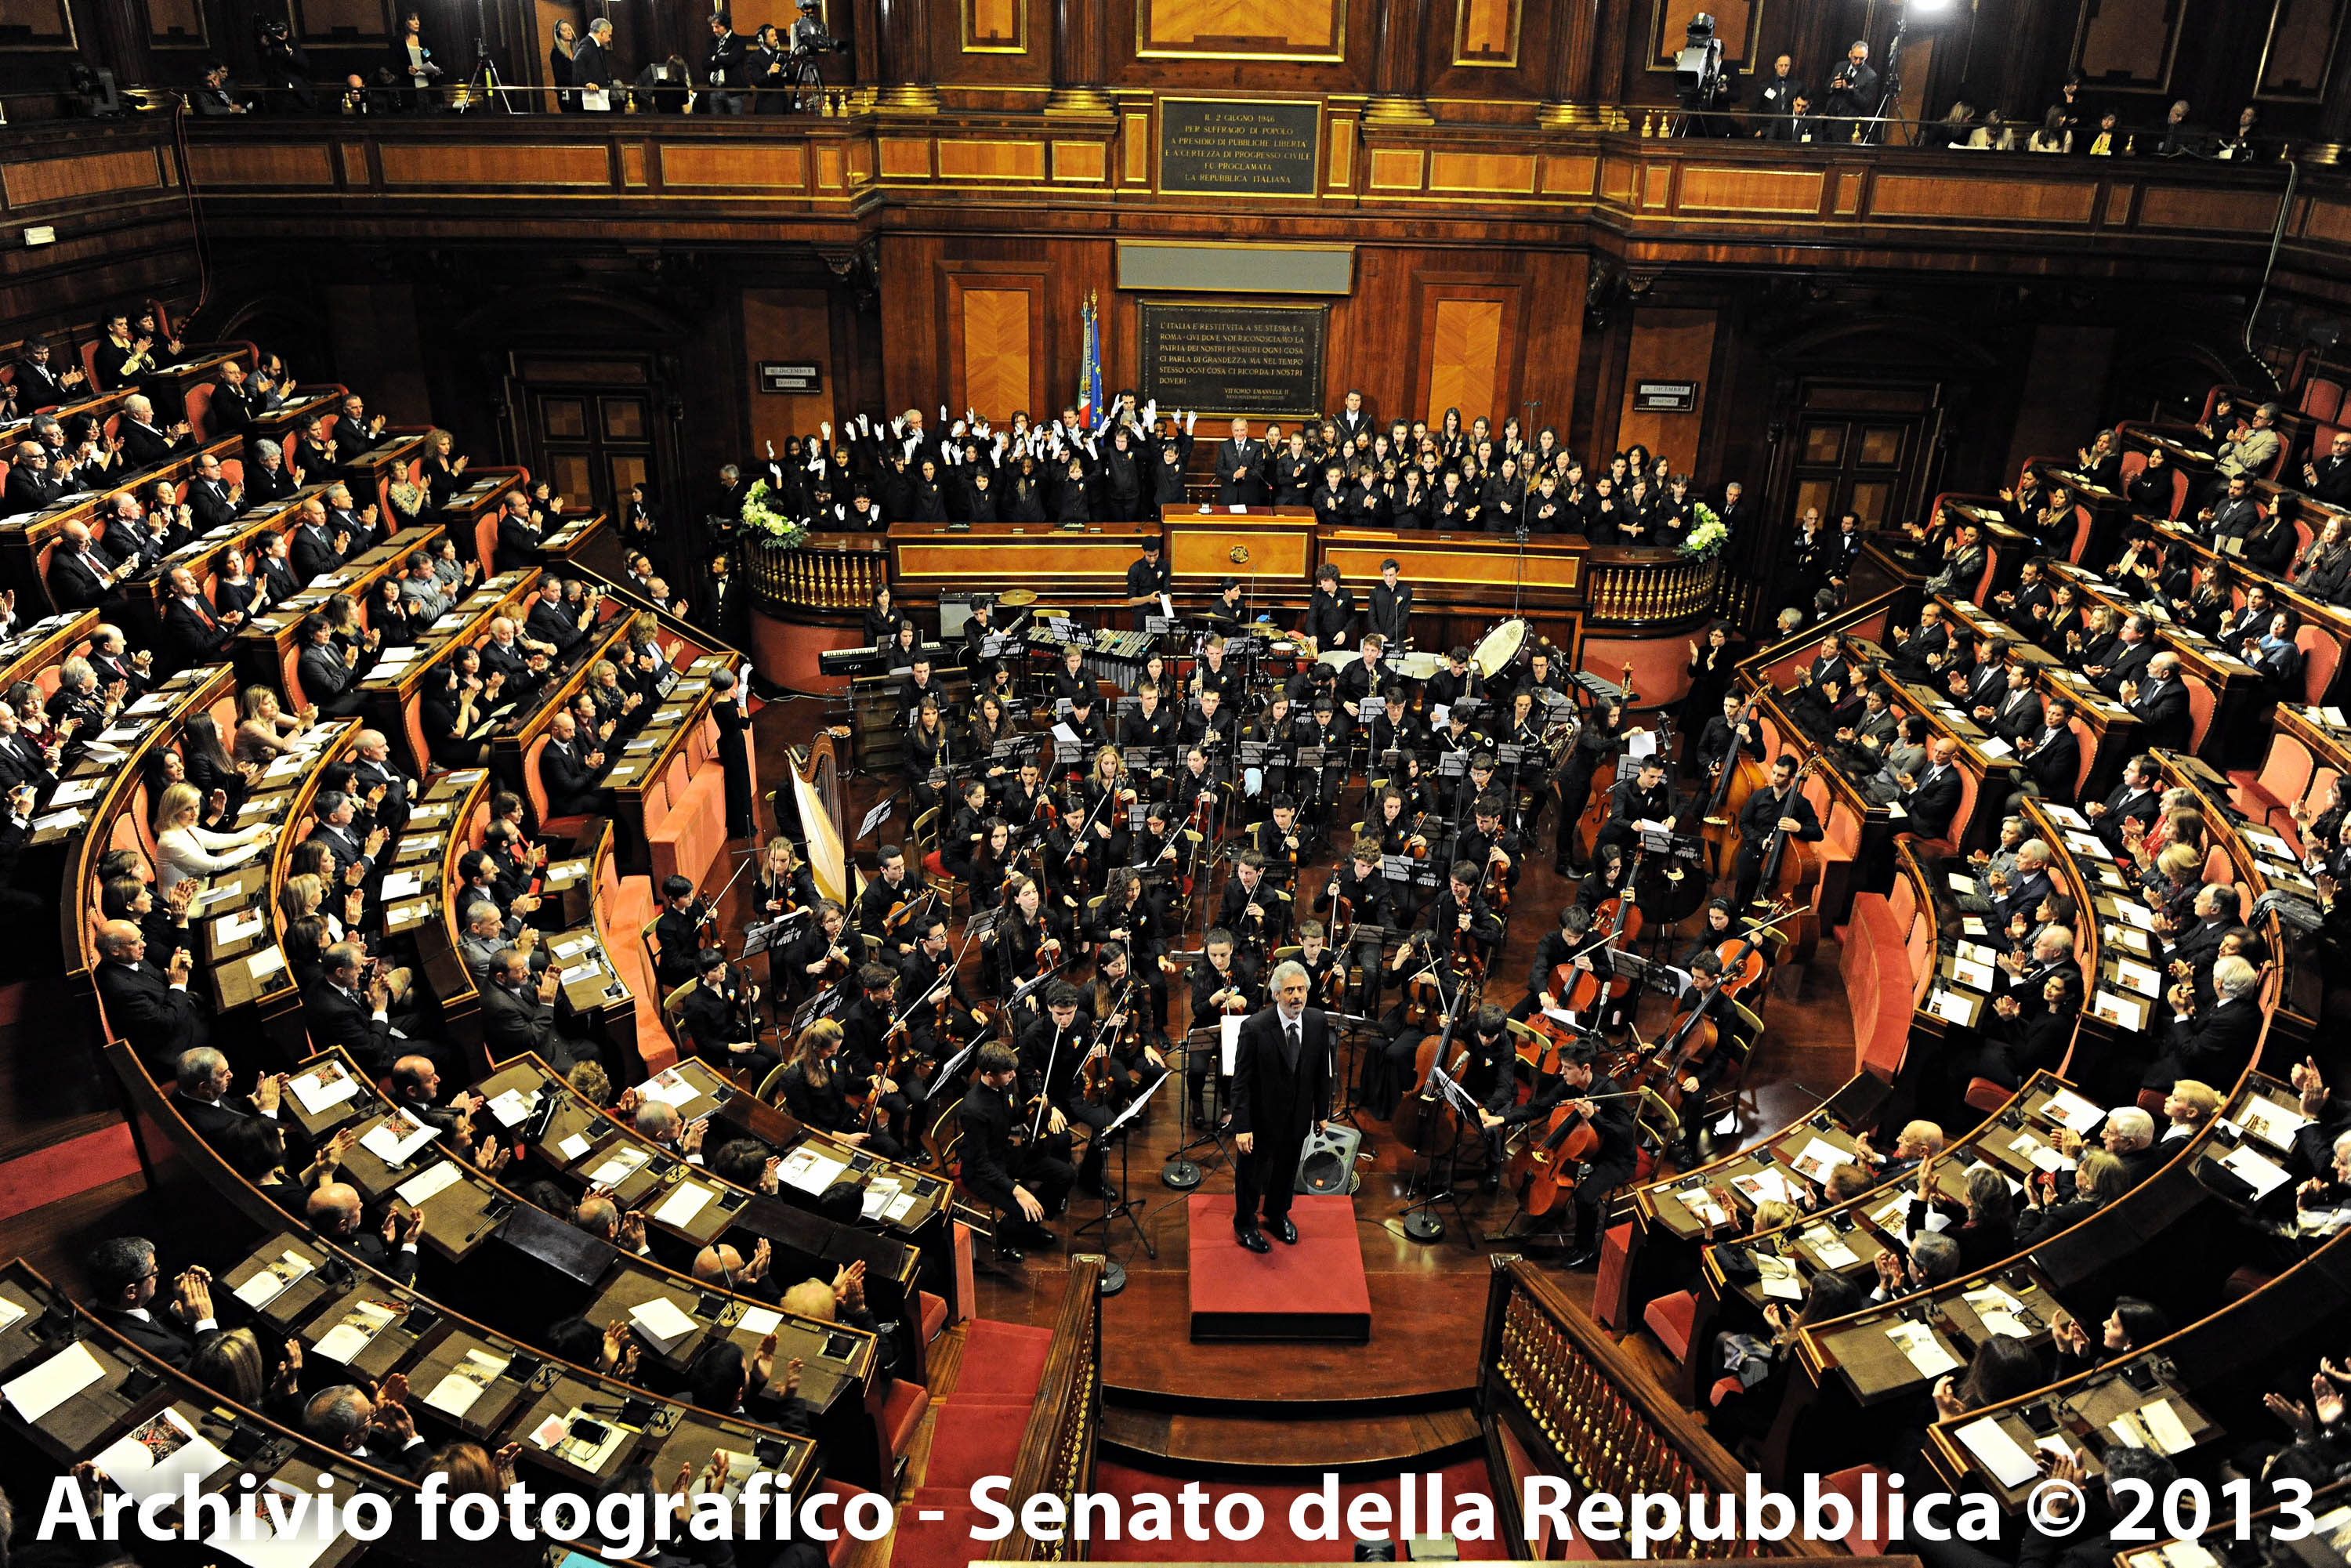 Concerto Senato2013